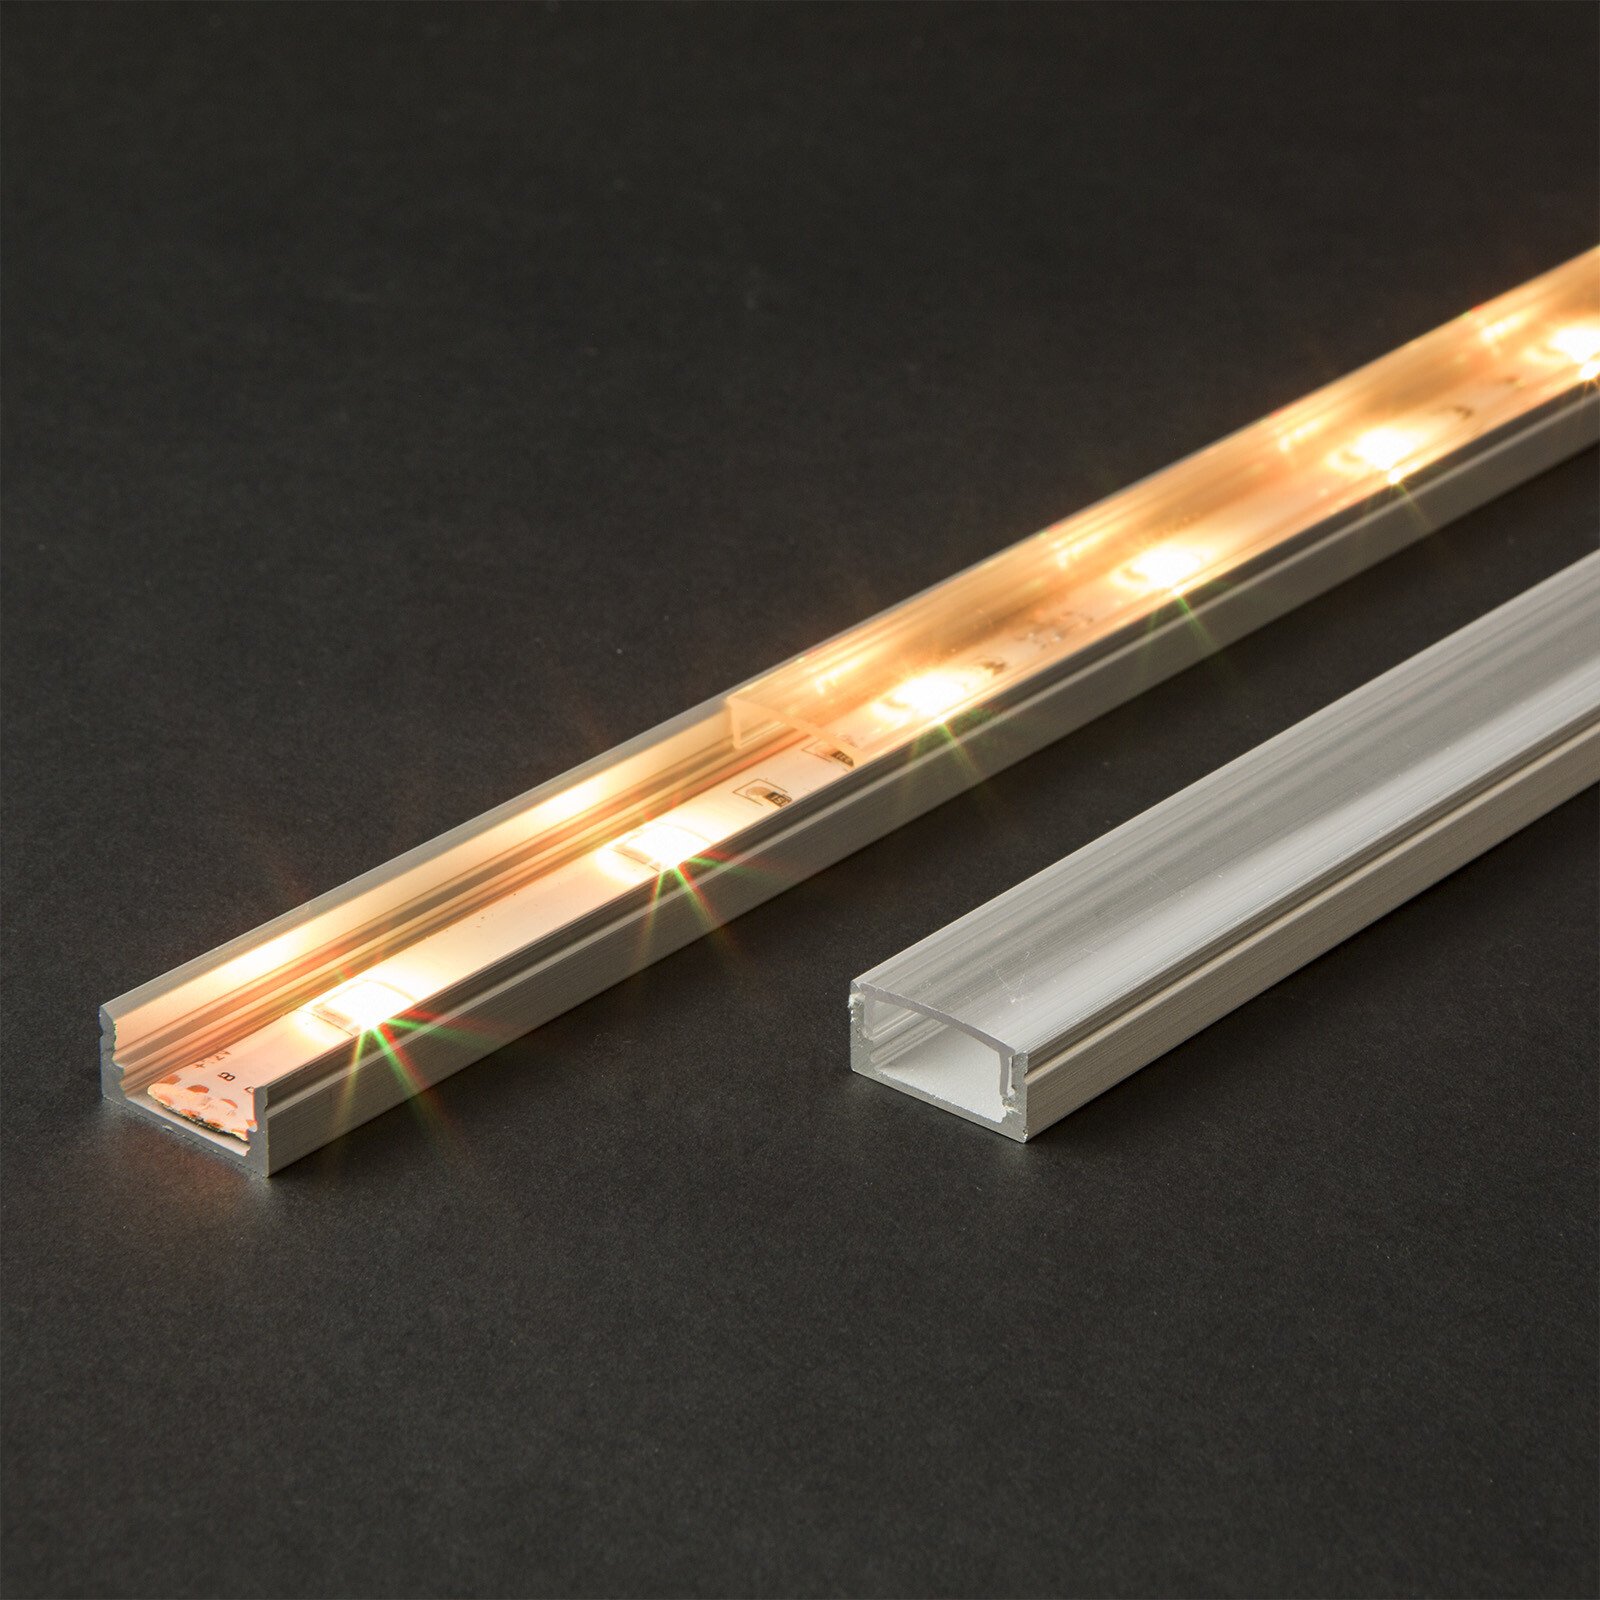 Aluminium Profile Track for LED thumb